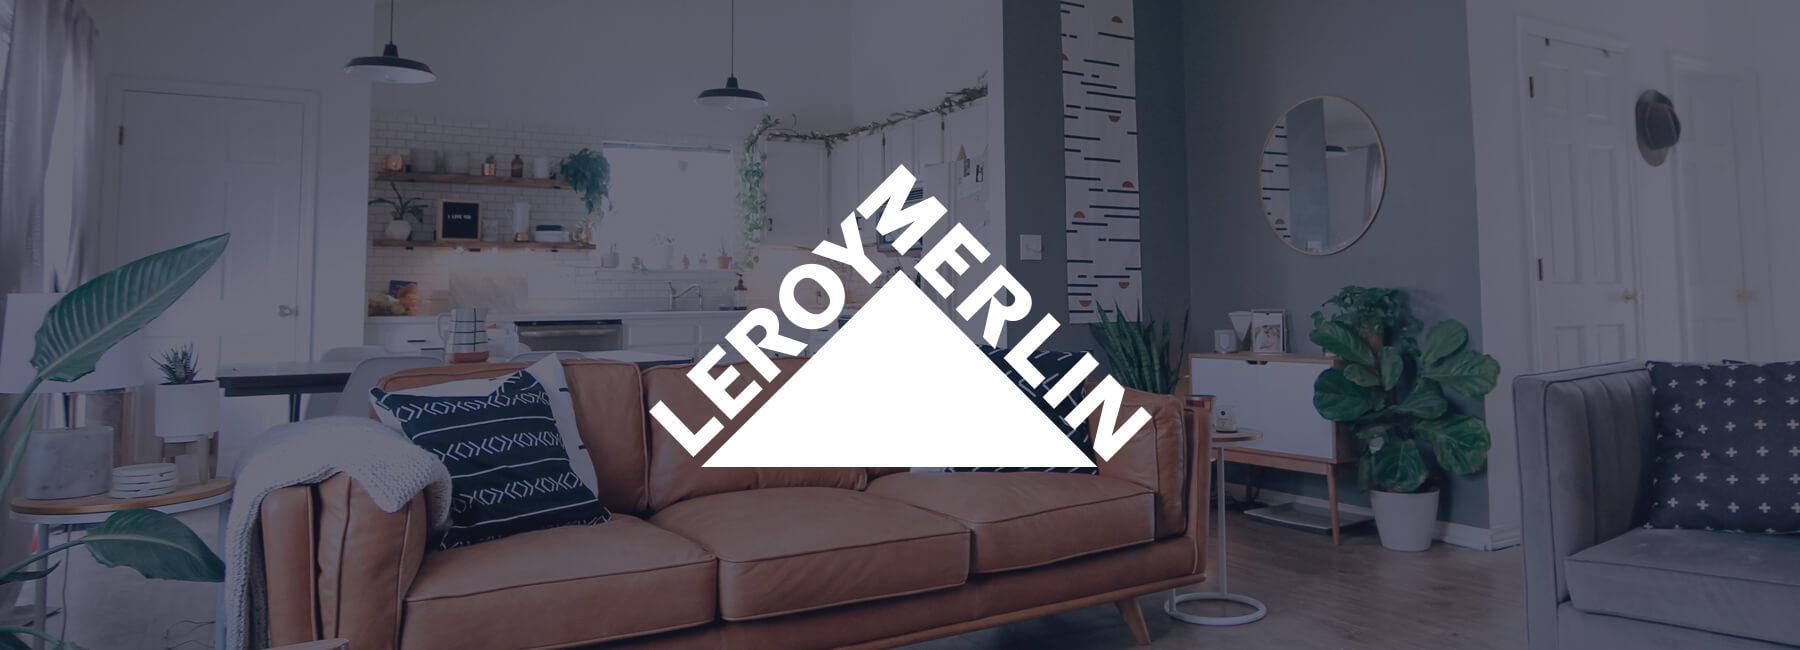 Leroy Merlin impulsa las tasas de conversión con la retroalimentación de Mopinion